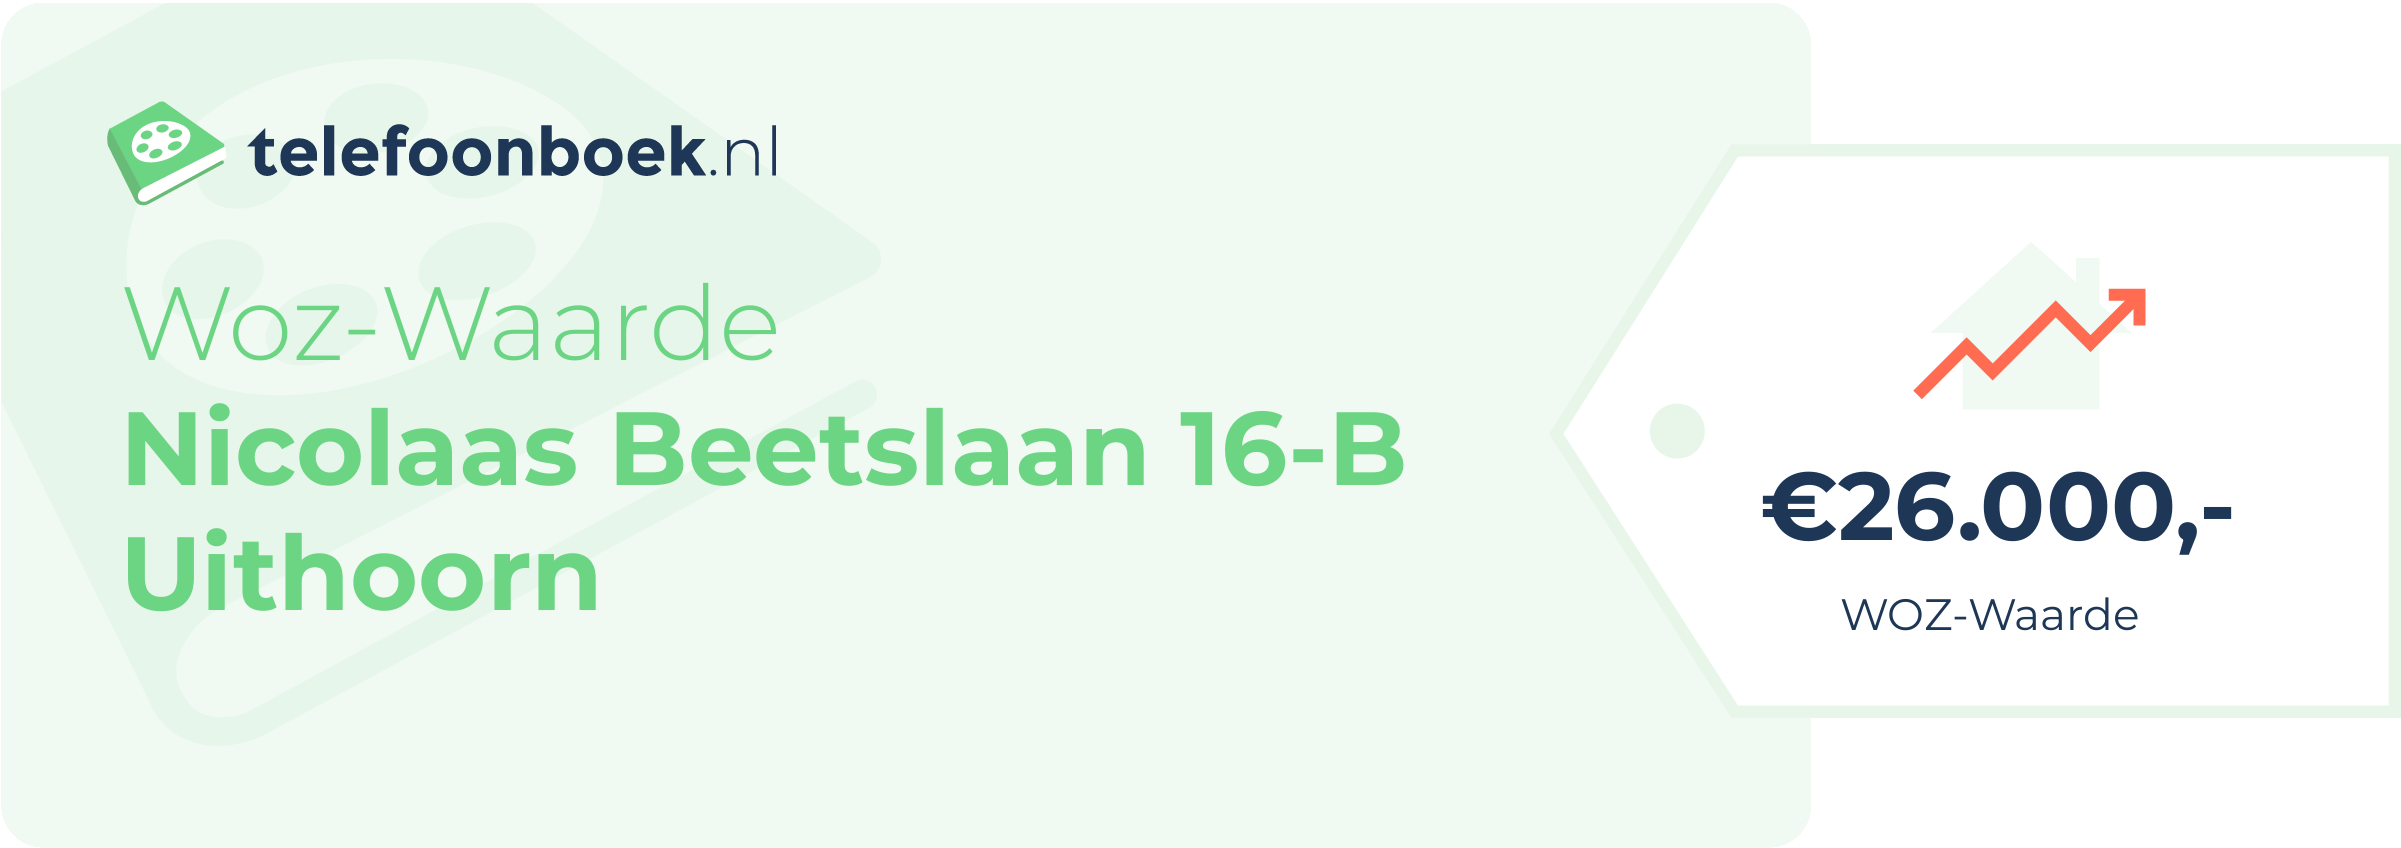 WOZ-waarde Nicolaas Beetslaan 16-B Uithoorn